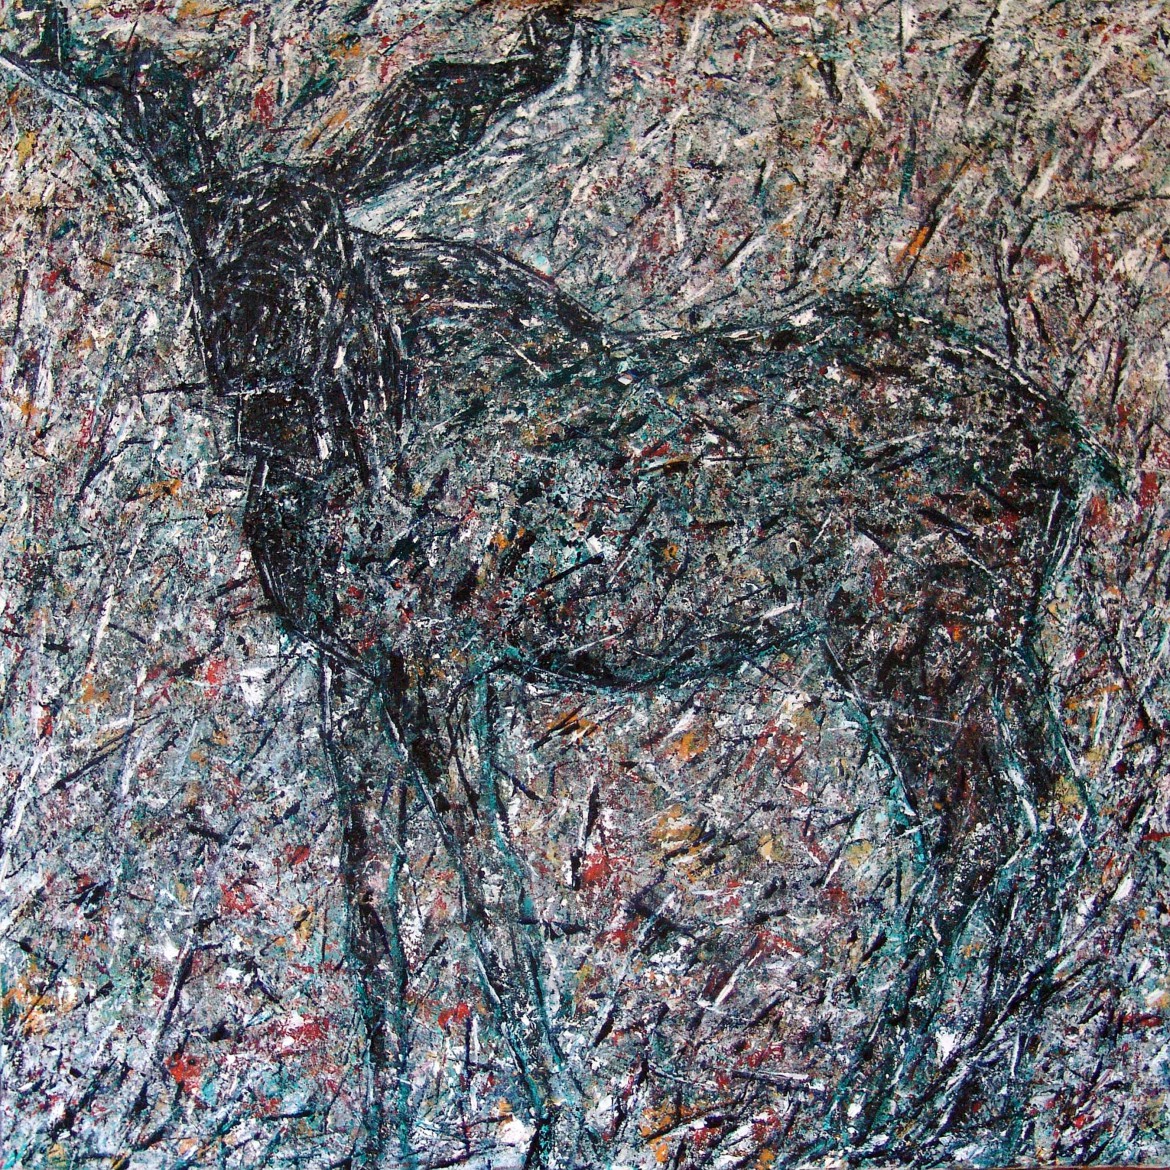 Moose, Brigitte Gautschi